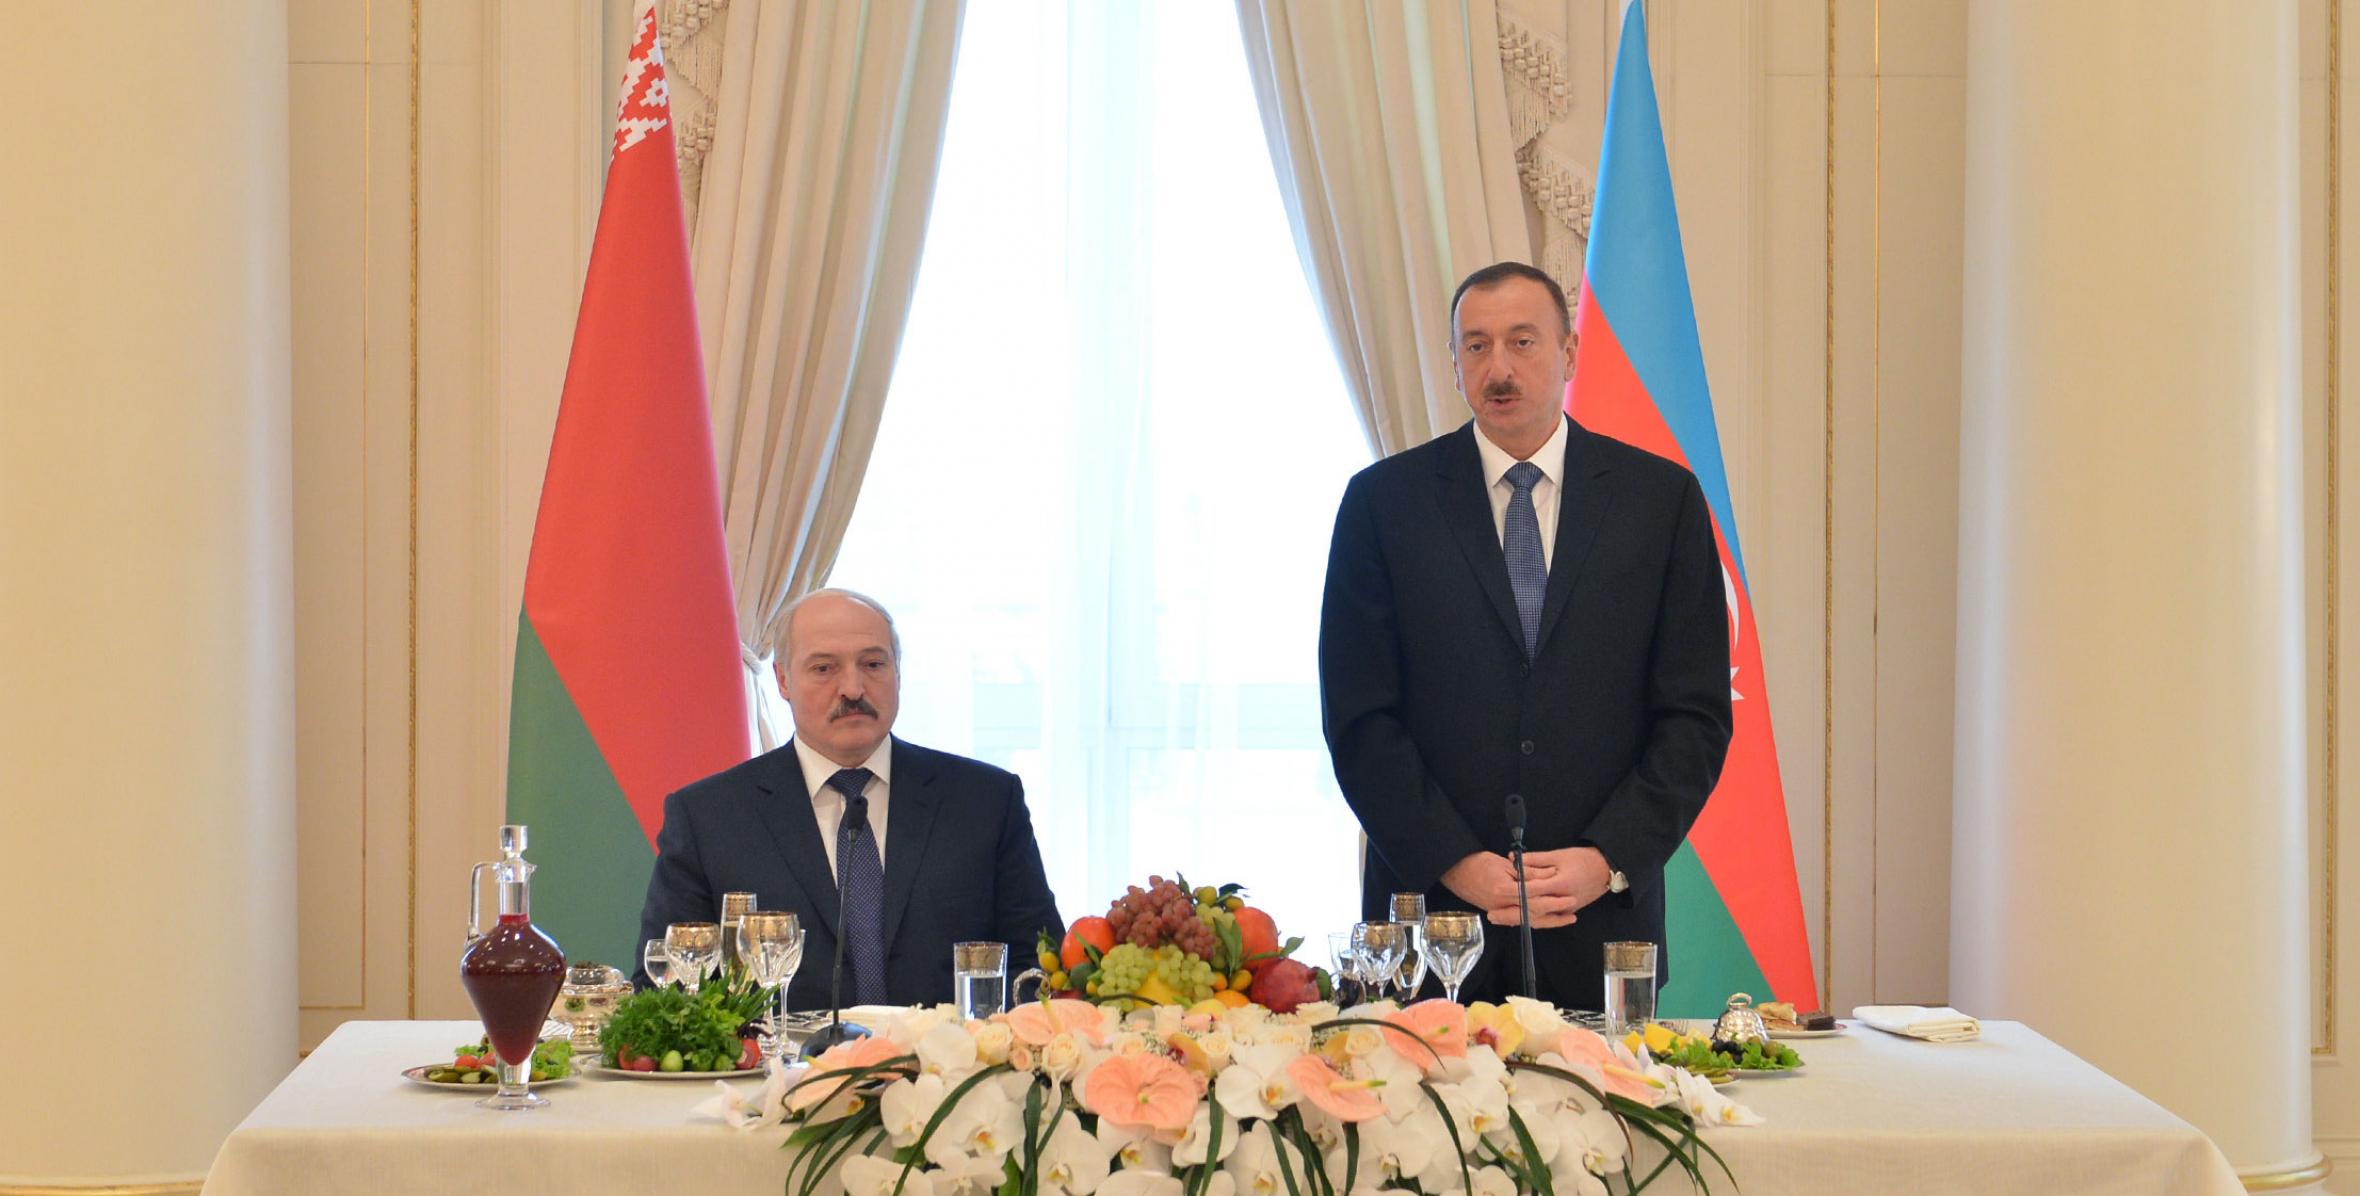 От имени Ильхама Алиева был дан официальный обед в честь Президента Республики Беларусь Александра Лукашенко